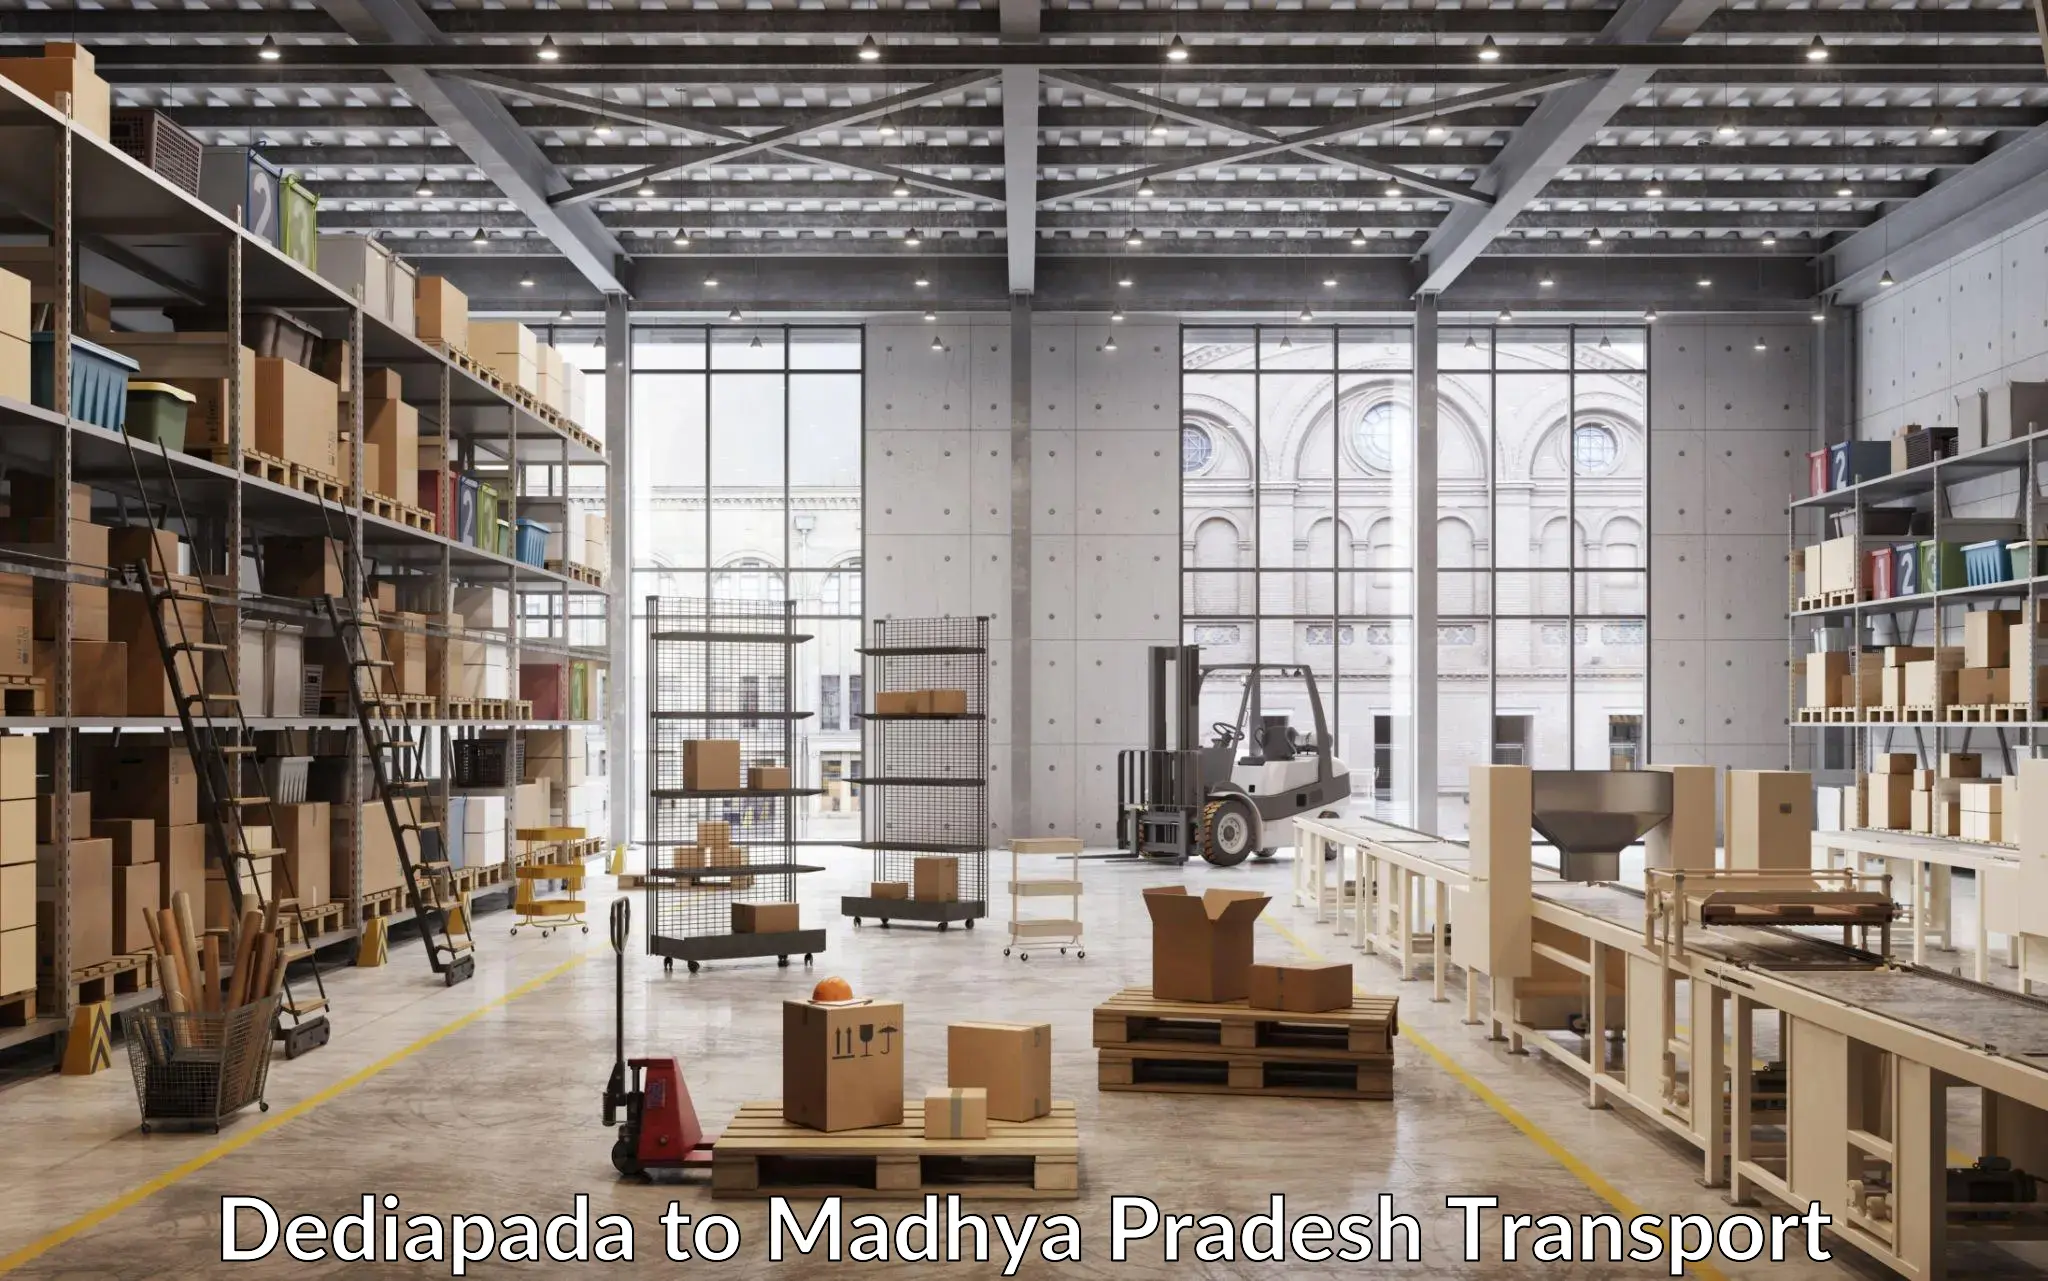 Transport in sharing Dediapada to Madhya Pradesh